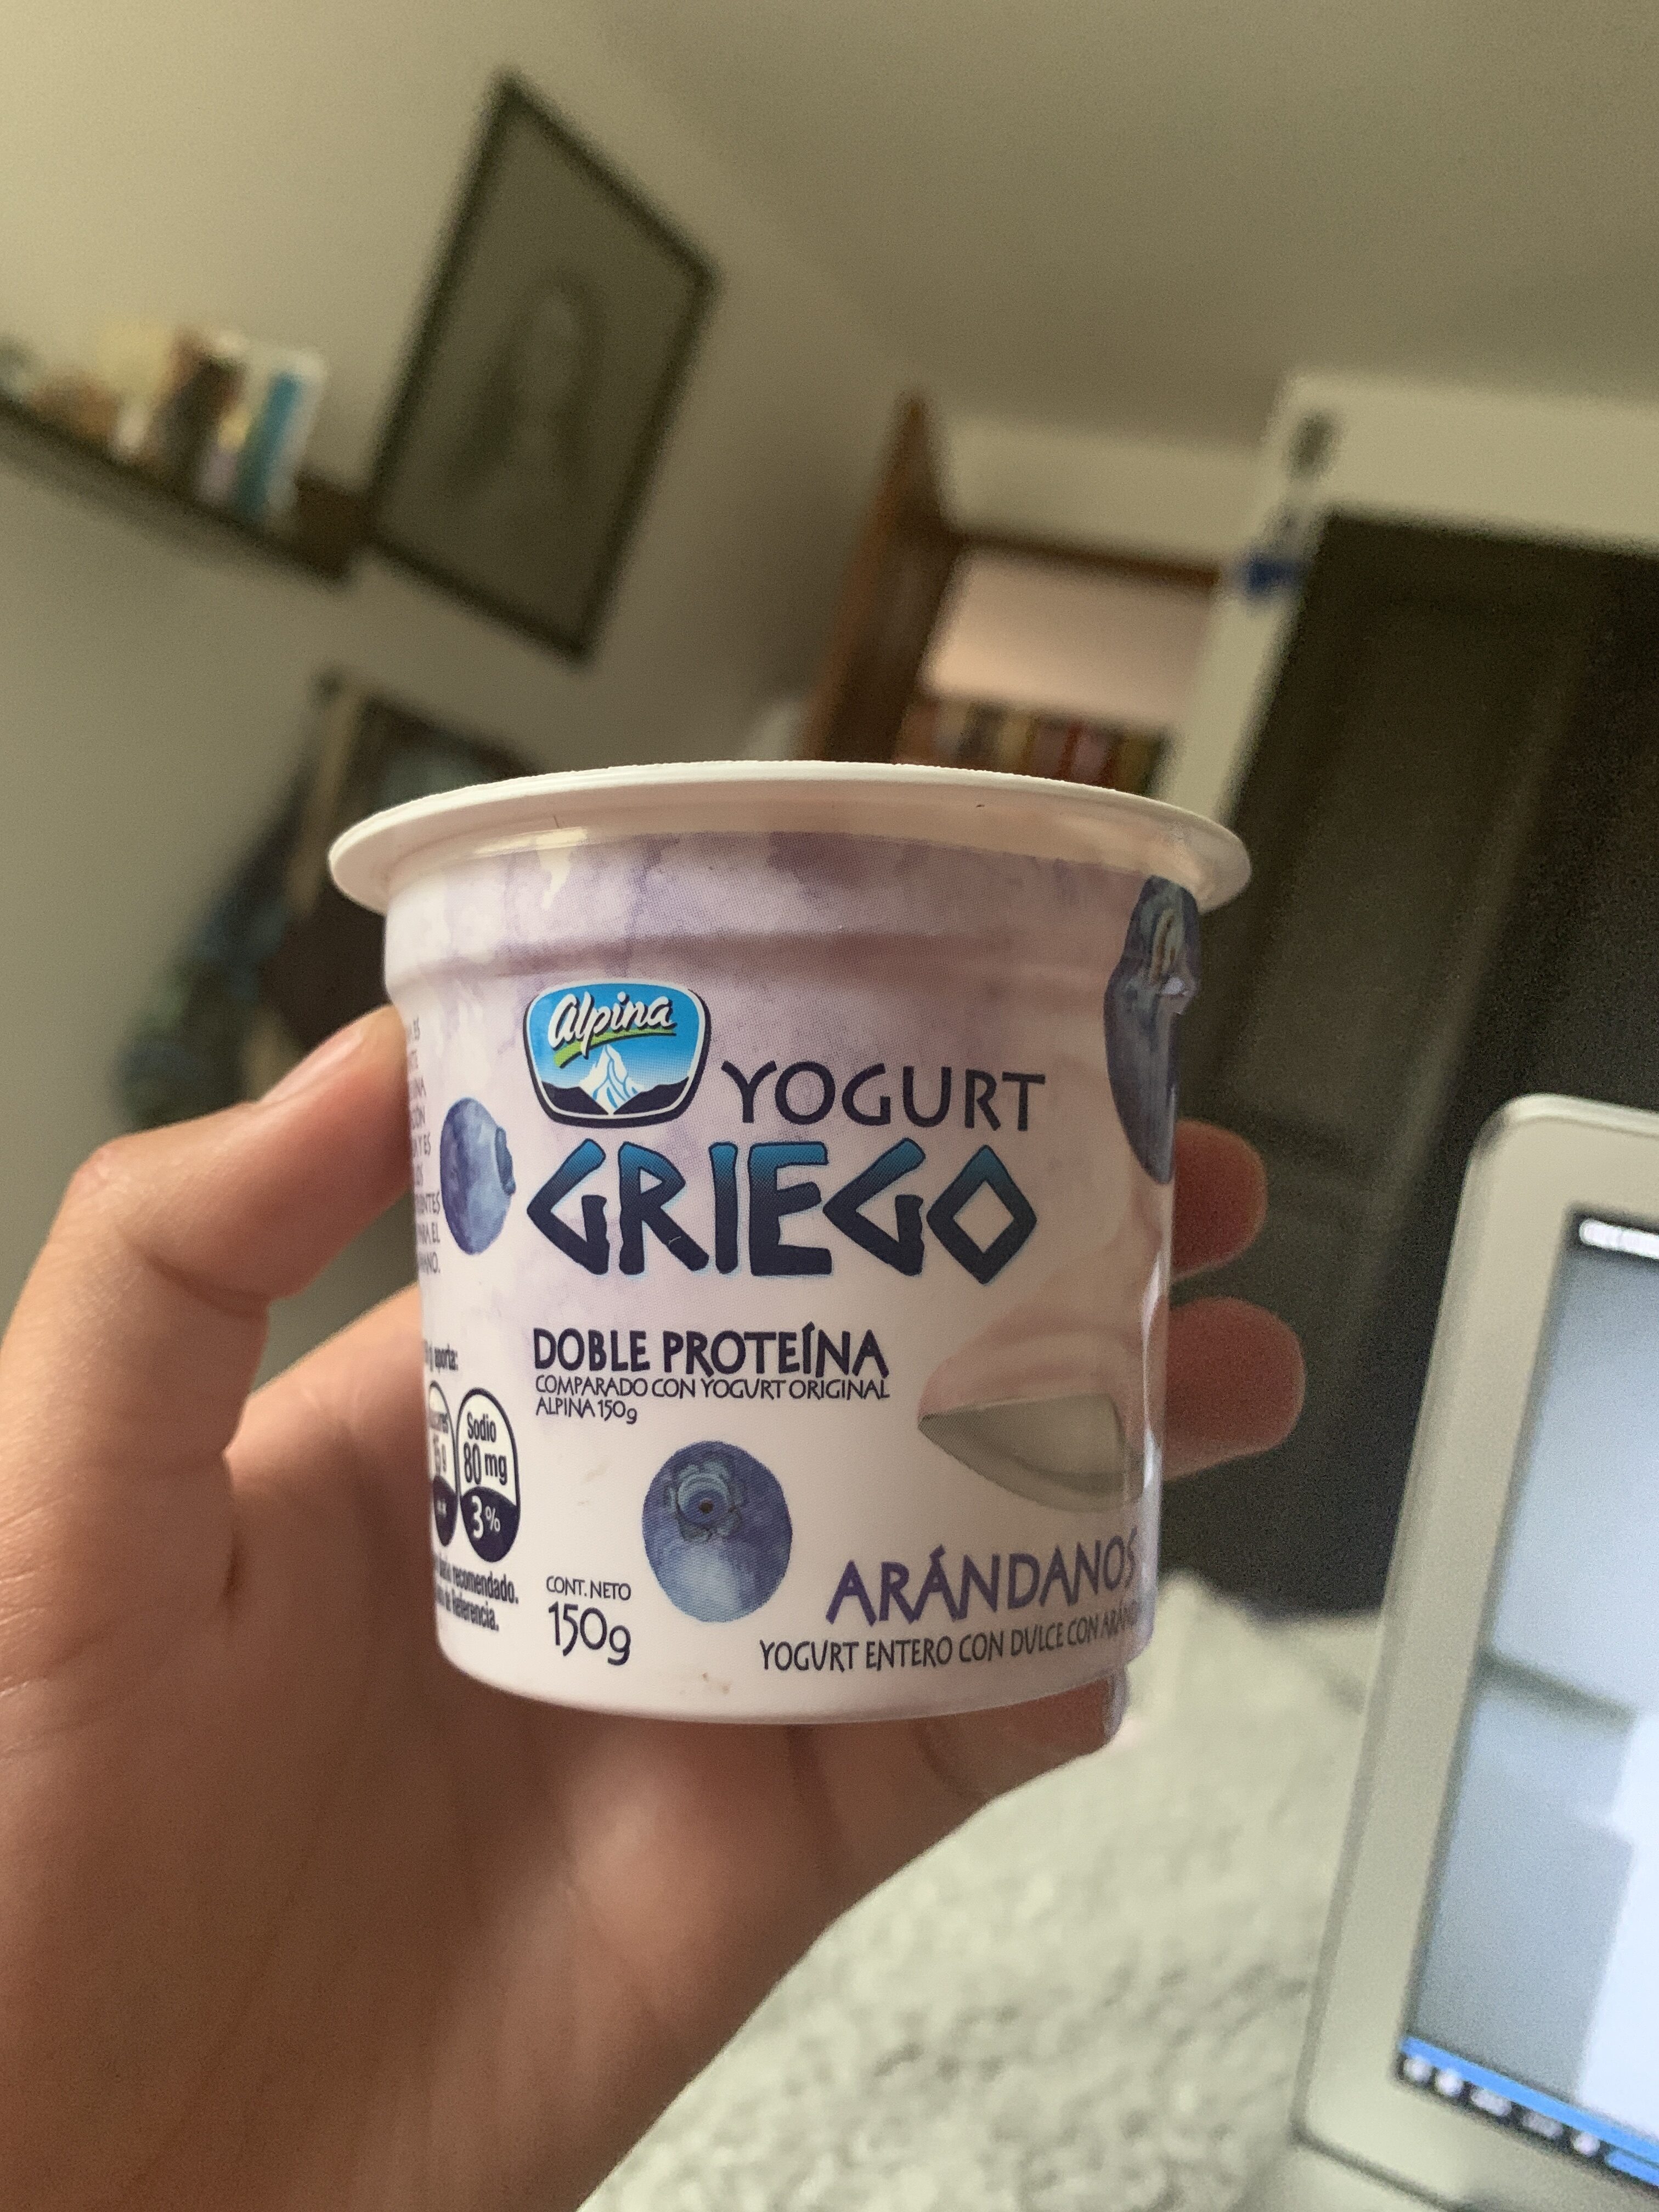 Yogurt Griego Arándanos - Product - en